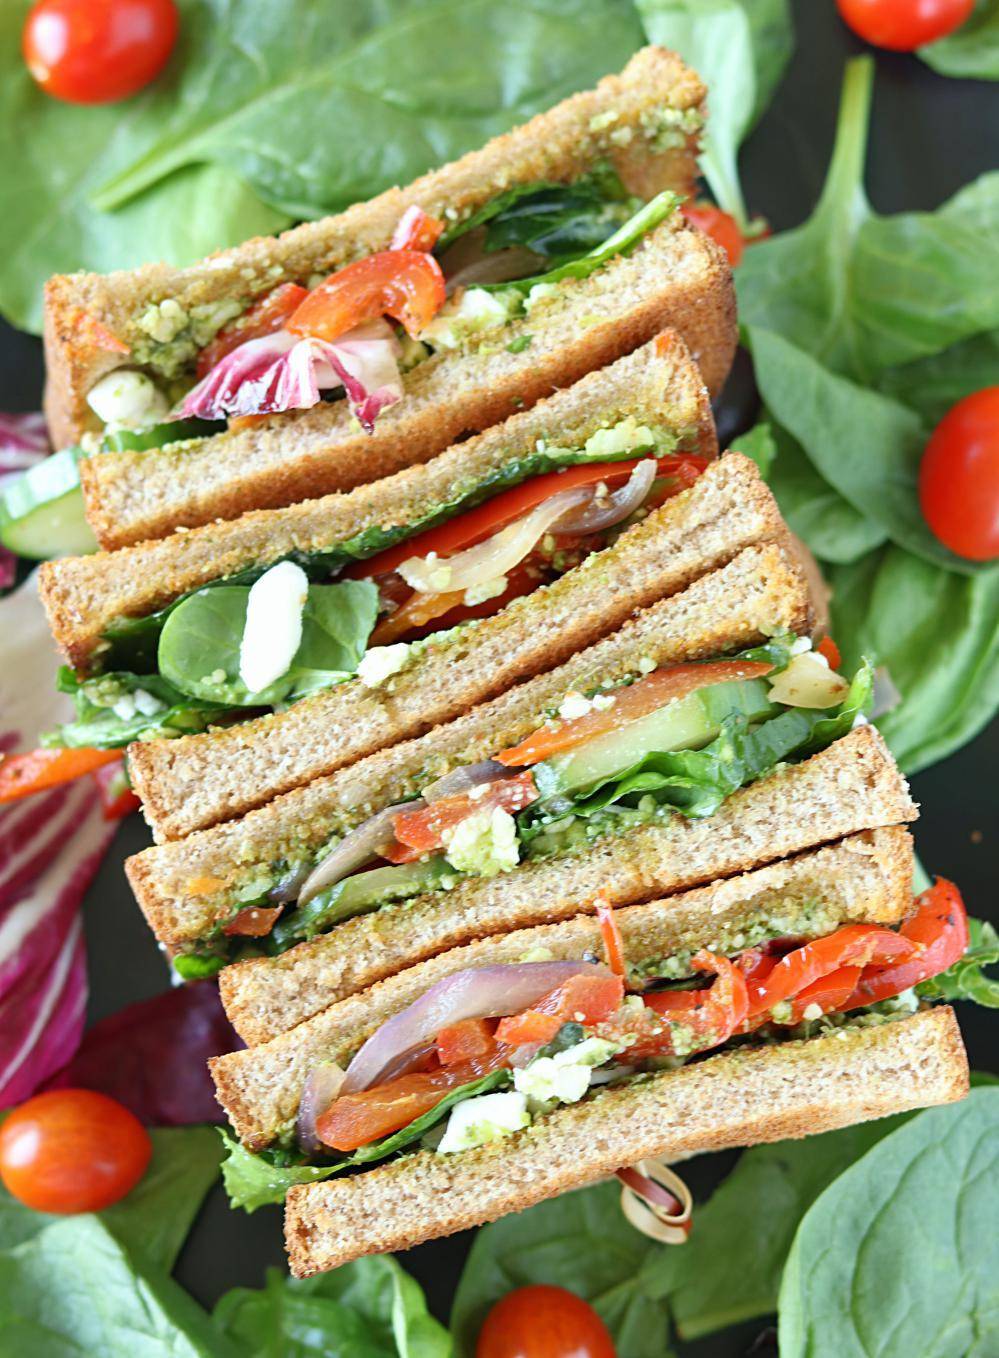 Recipe: खाना खत्म,तो भूख को शांत करने के लिए स्वादिष्ट वेजी-पेस्टो सैंडविच ट्राई करें